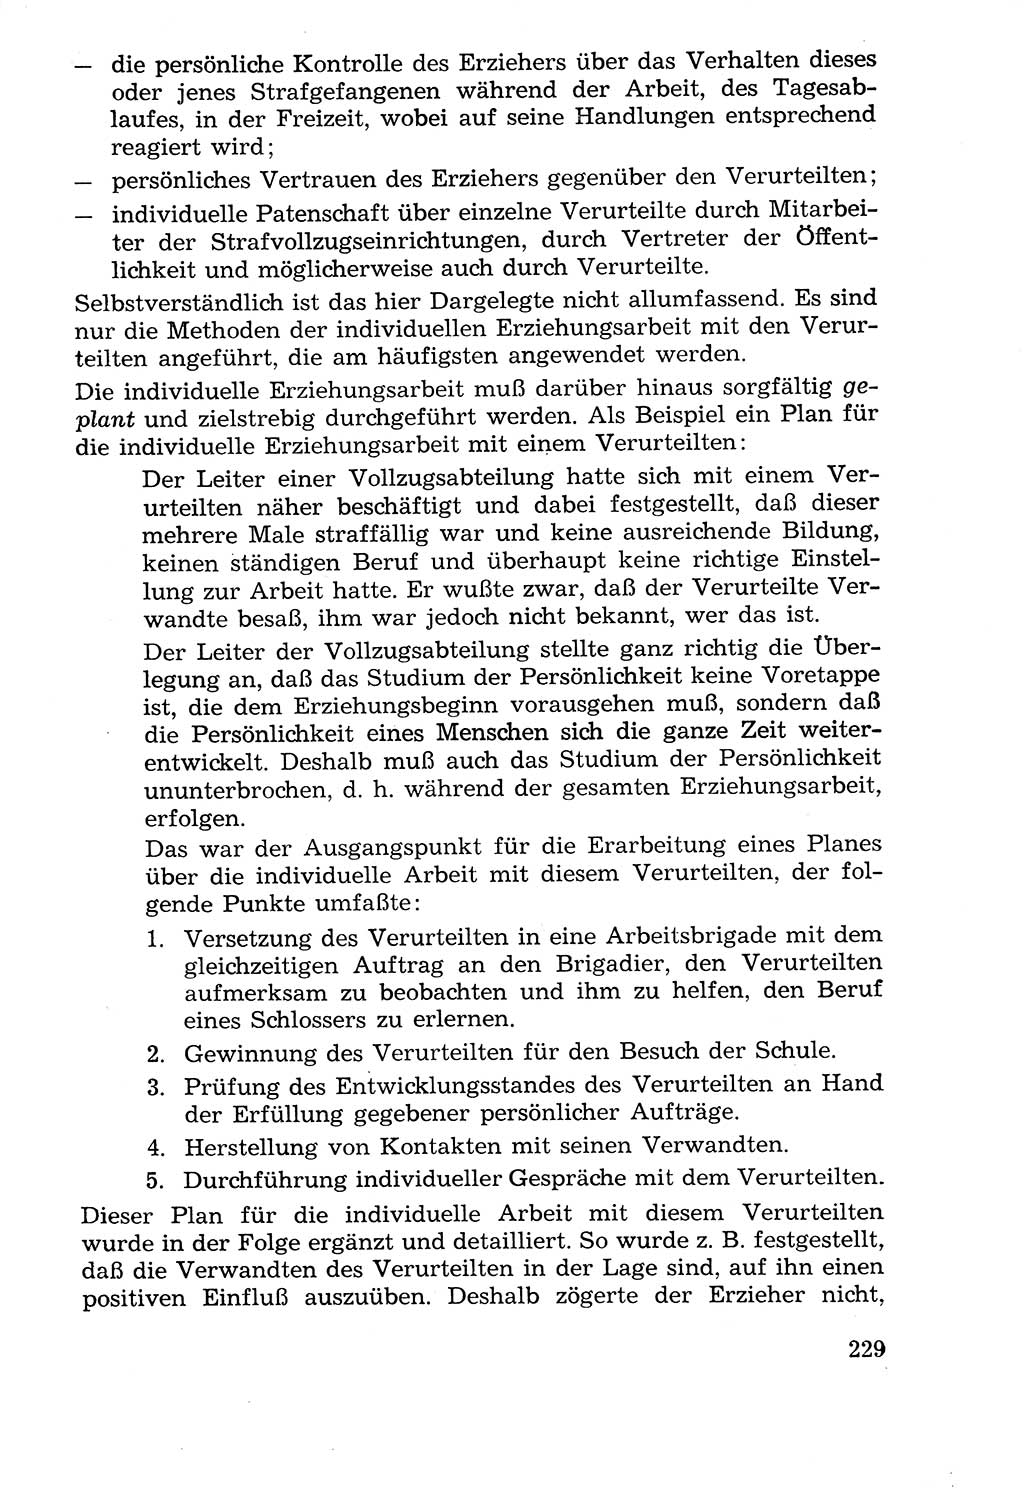 Lehrbuch der Strafvollzugspädagogik [Deutsche Demokratische Republik (DDR)] 1969, Seite 229 (Lb. SV-Pd. DDR 1969, S. 229)